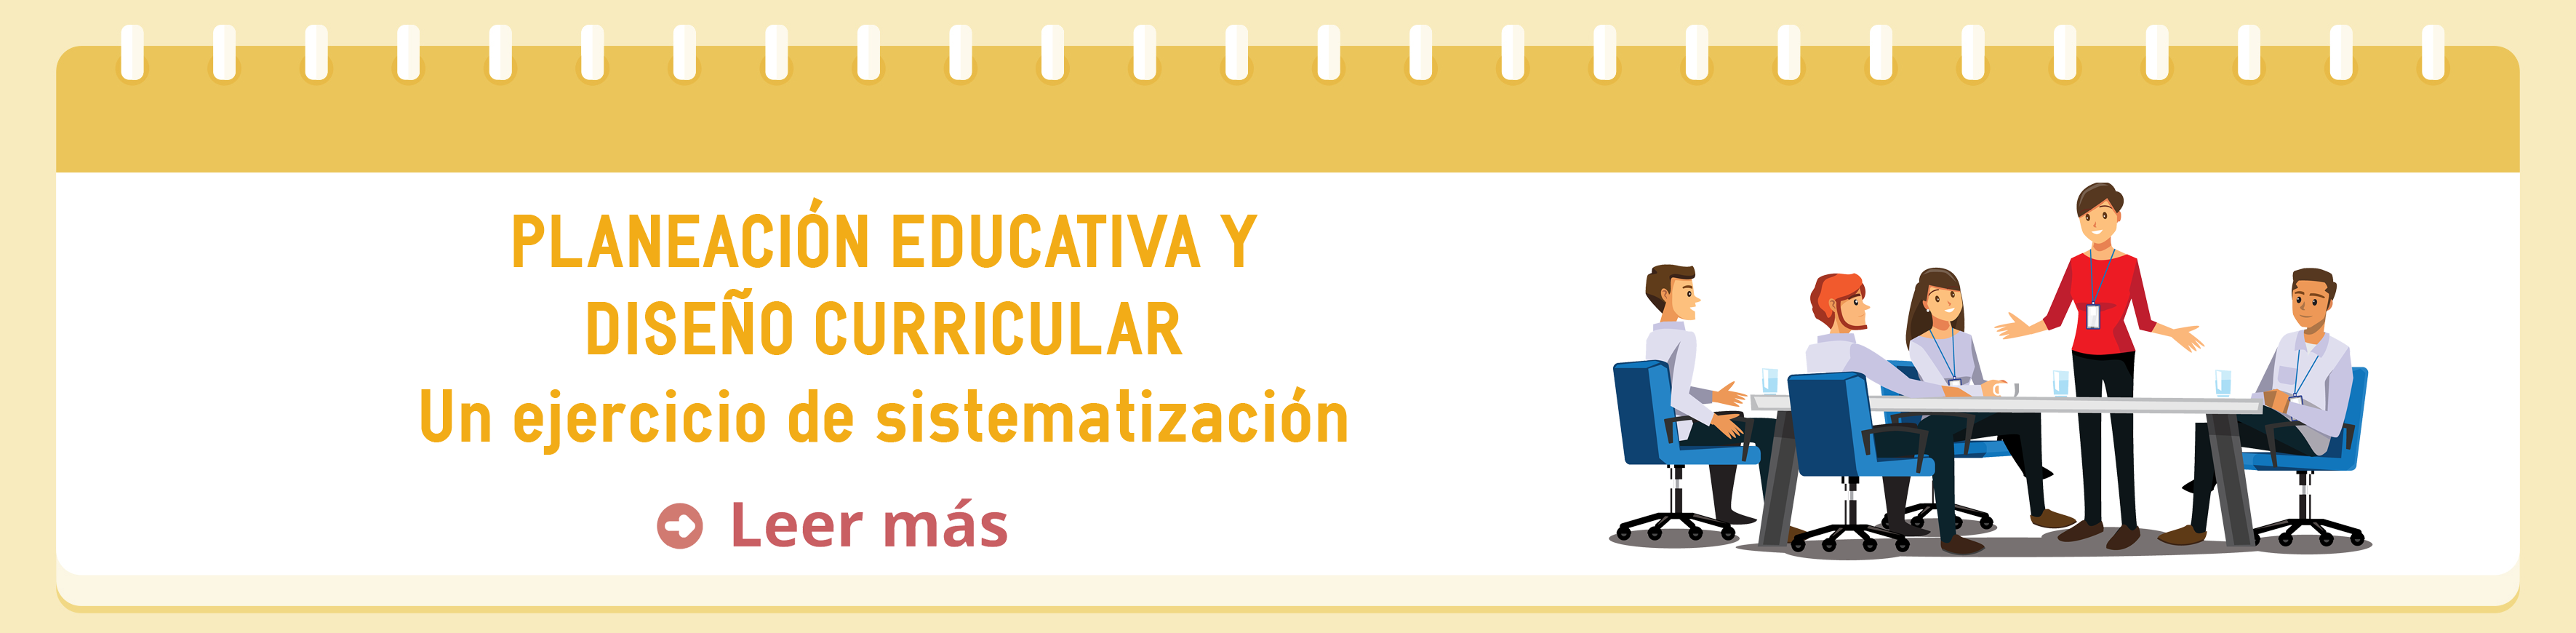 planeacion_educativa_diseno_curricular_modelo.png